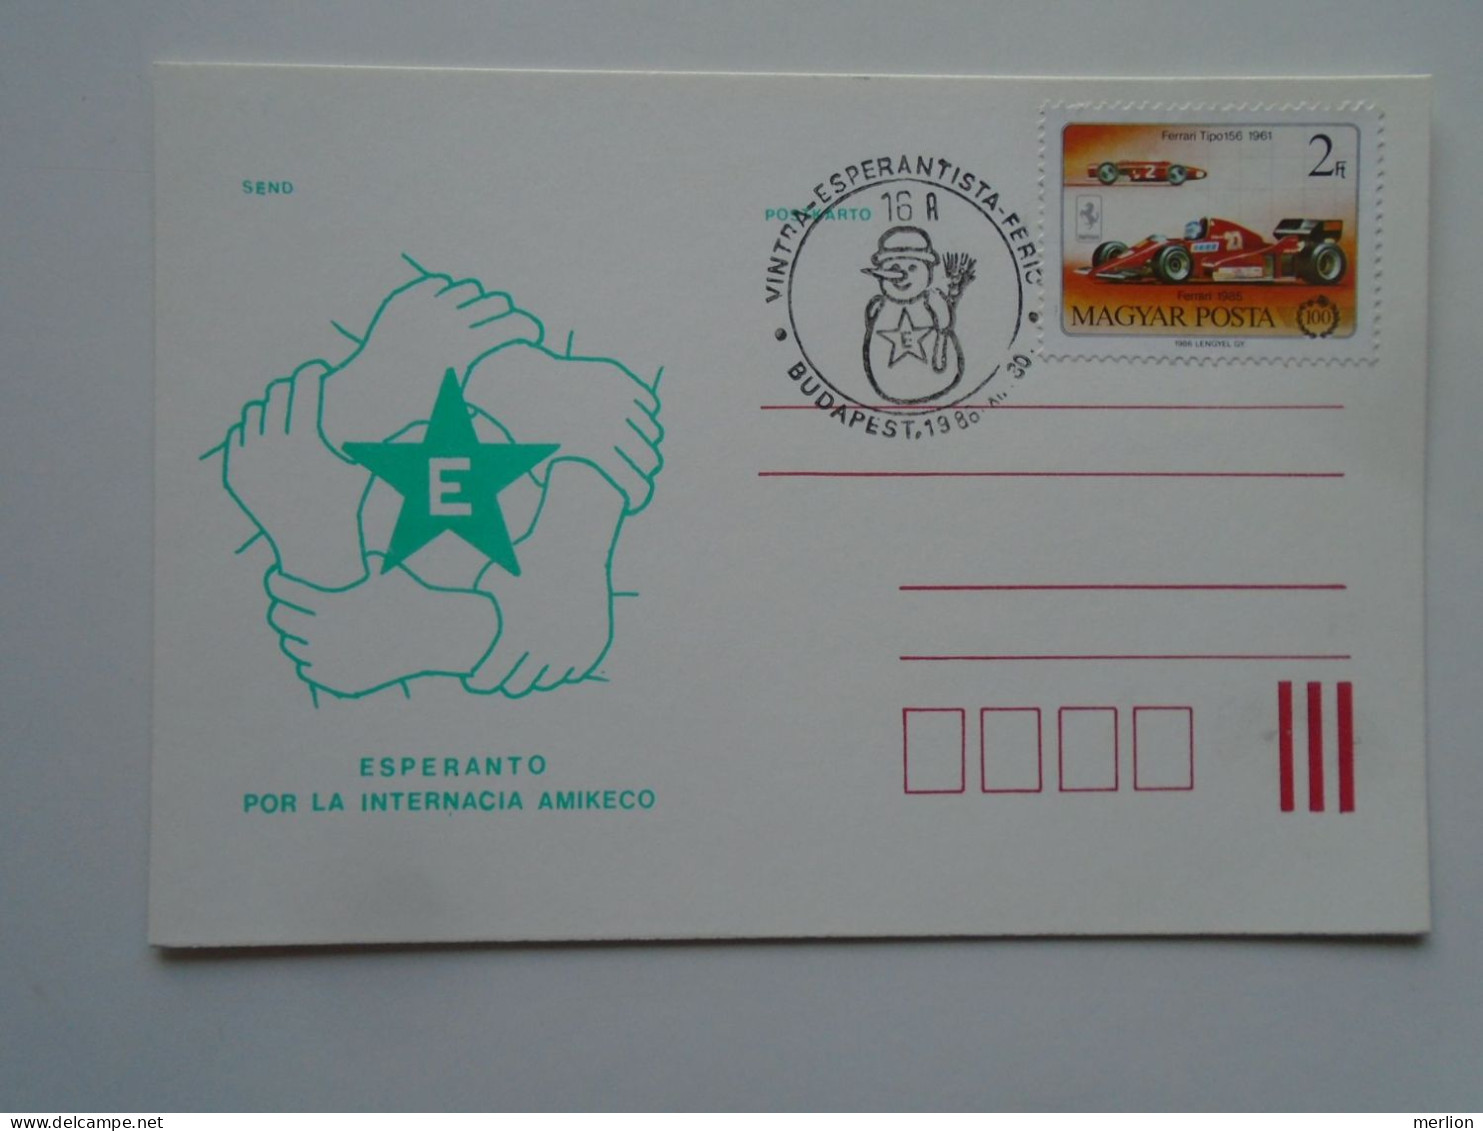 D200619   Hungary  -1986 Emléklap Levelezőlap - Postcard  Budapest  Esperanto - Esperánto